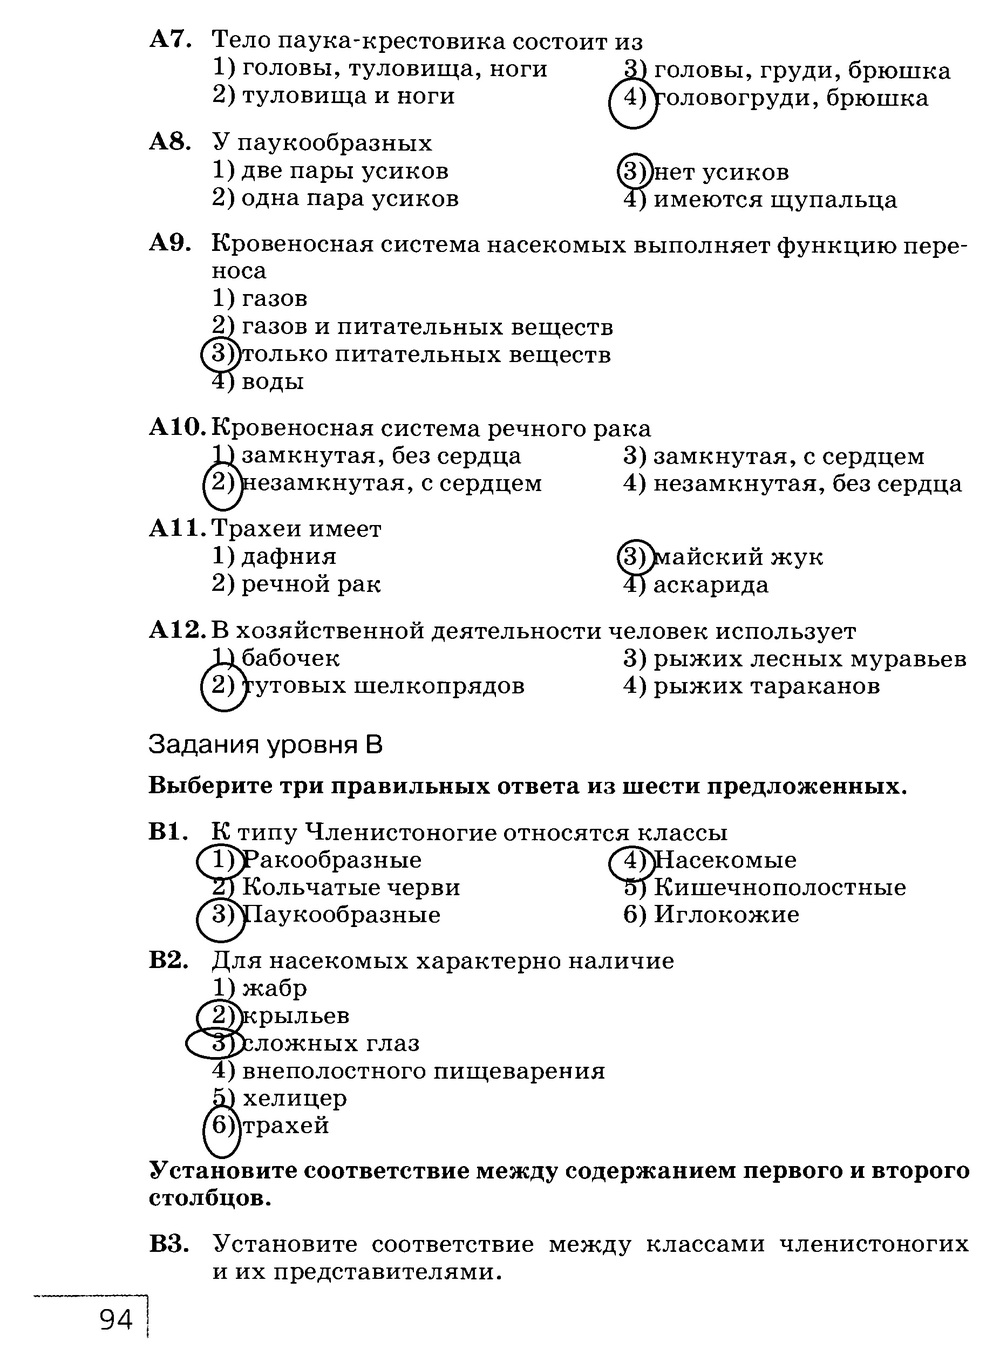 Рабочая тетрадь, 7 класс, Захаров В.Б., Сонин Н.И., 2015, задание: стр. 94